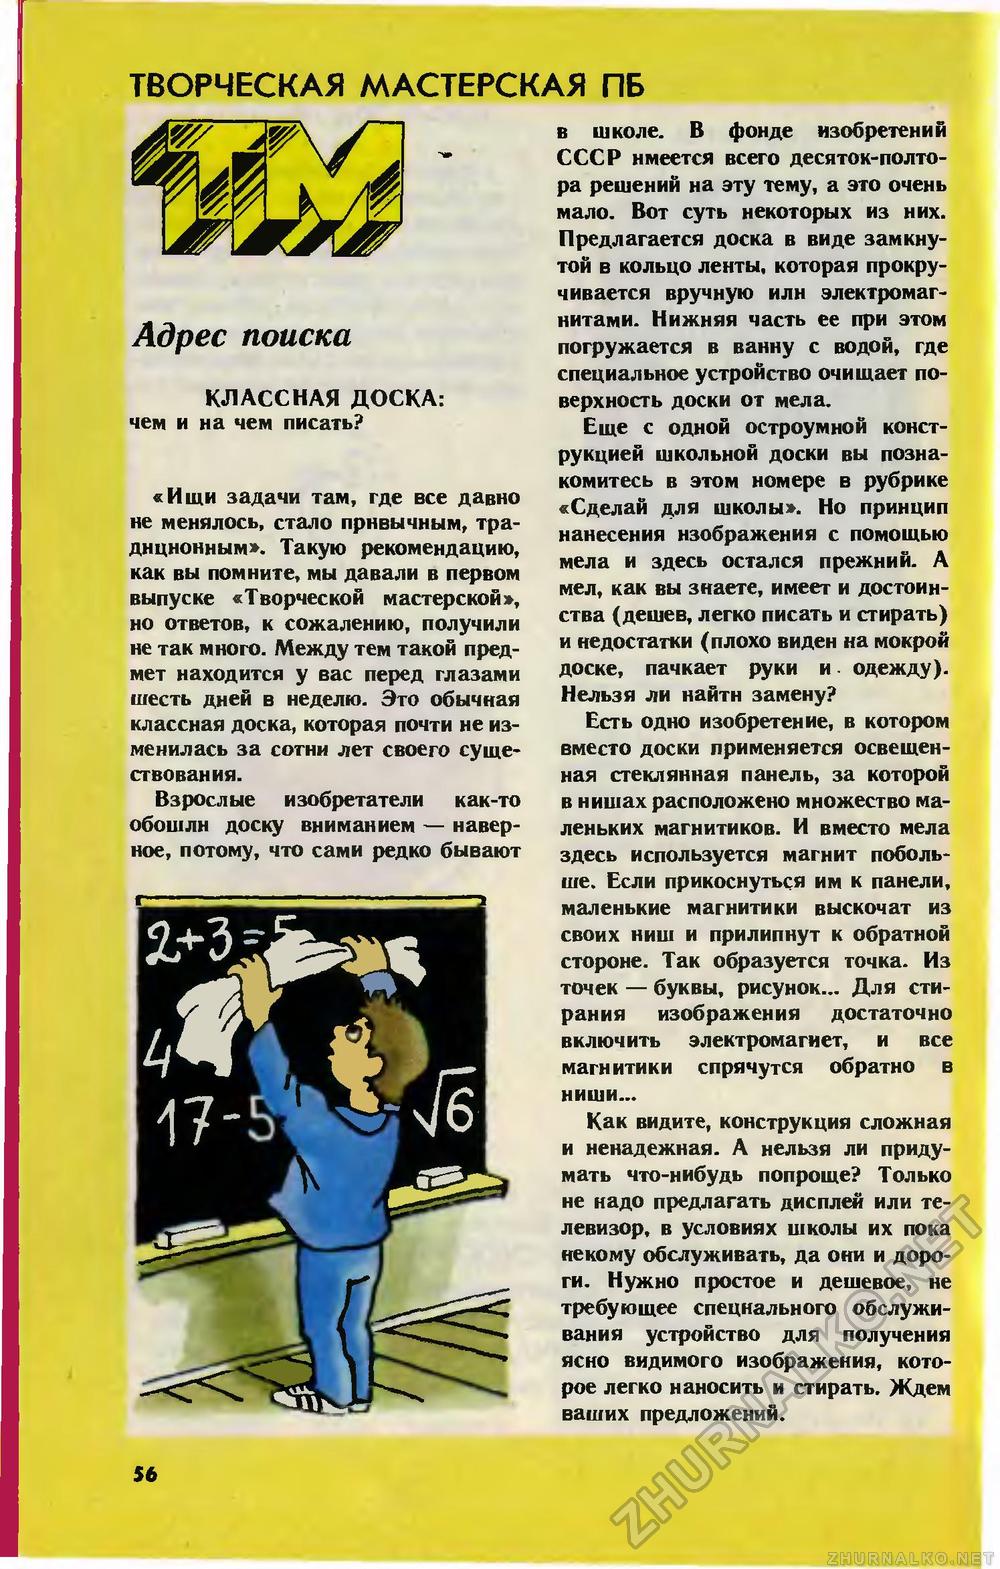 Юный техник 1989-01, страница 58